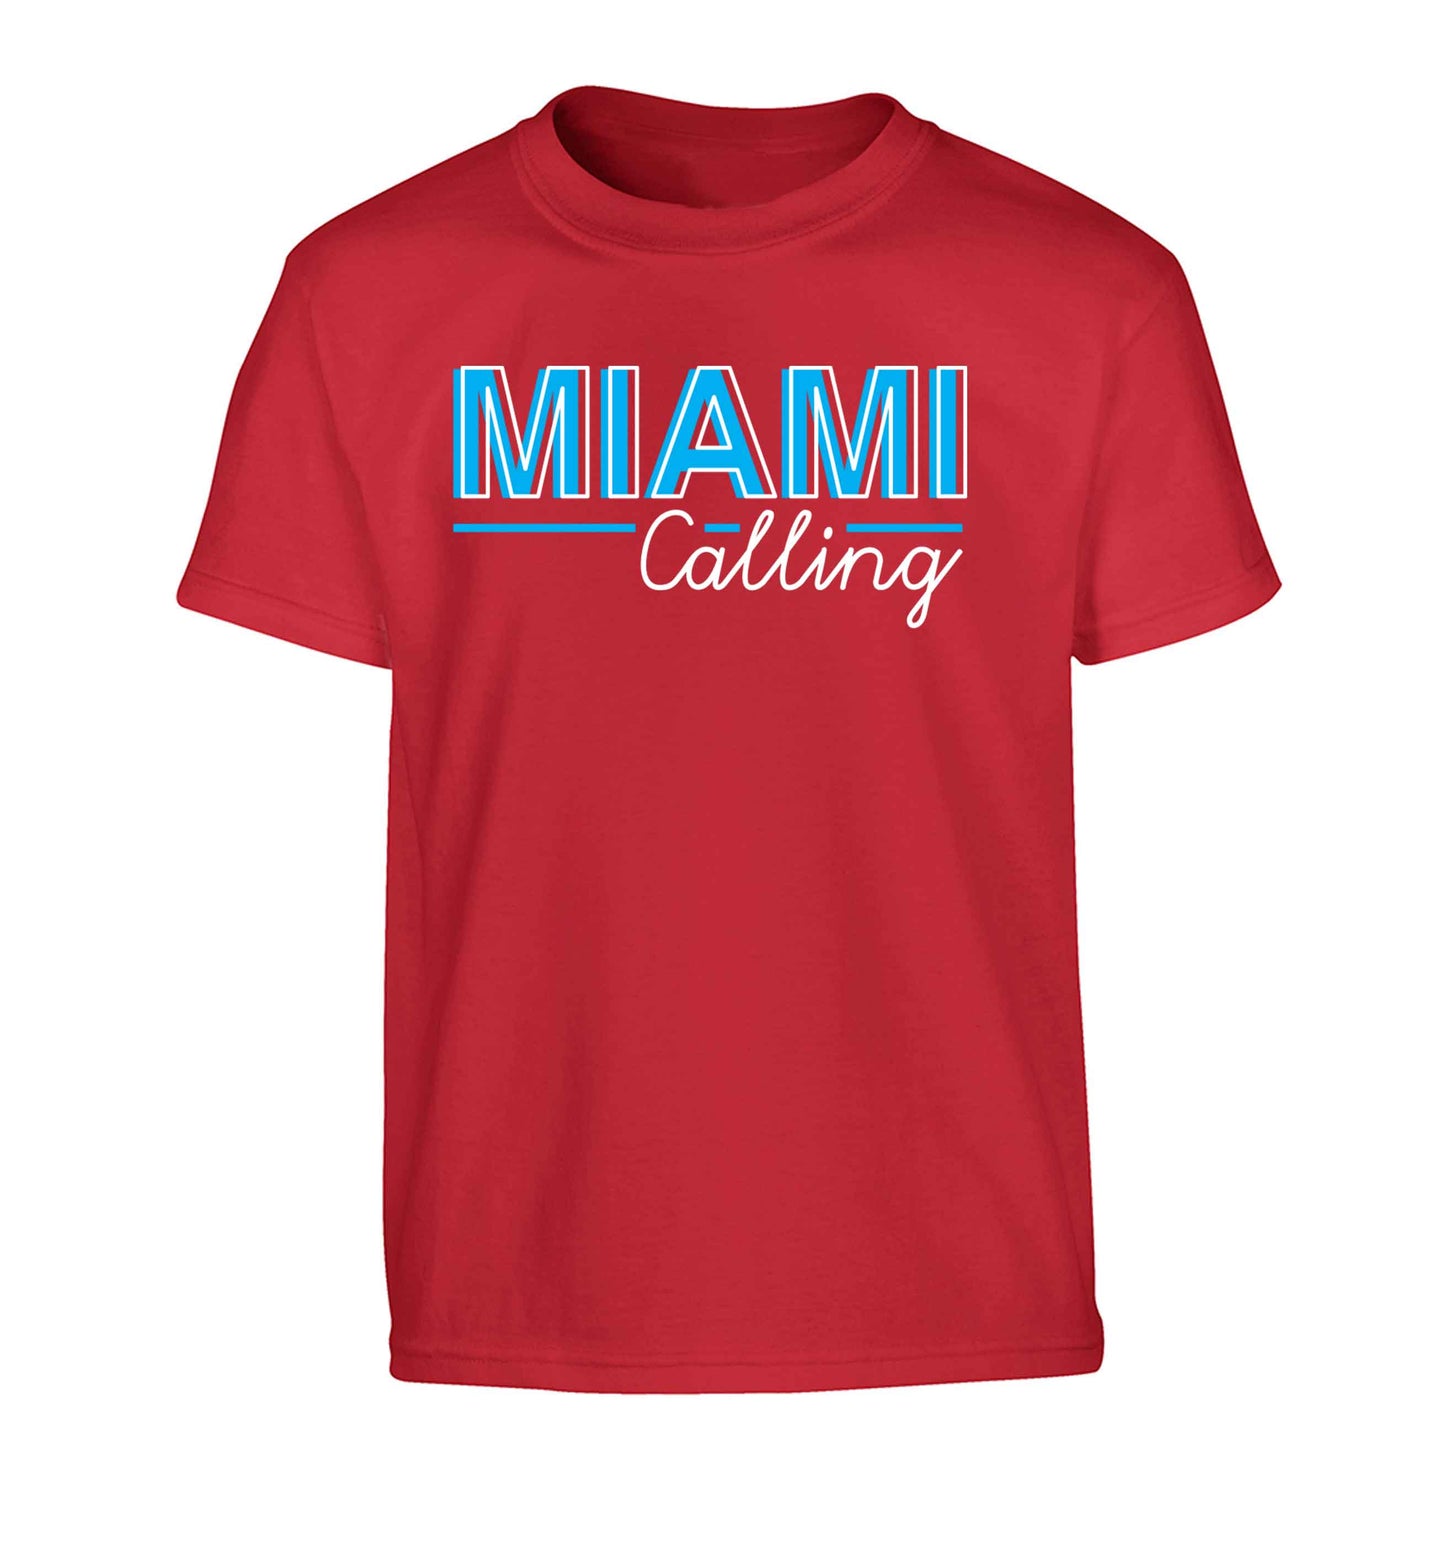 Miami calling Children's red Tshirt 12-13 Years